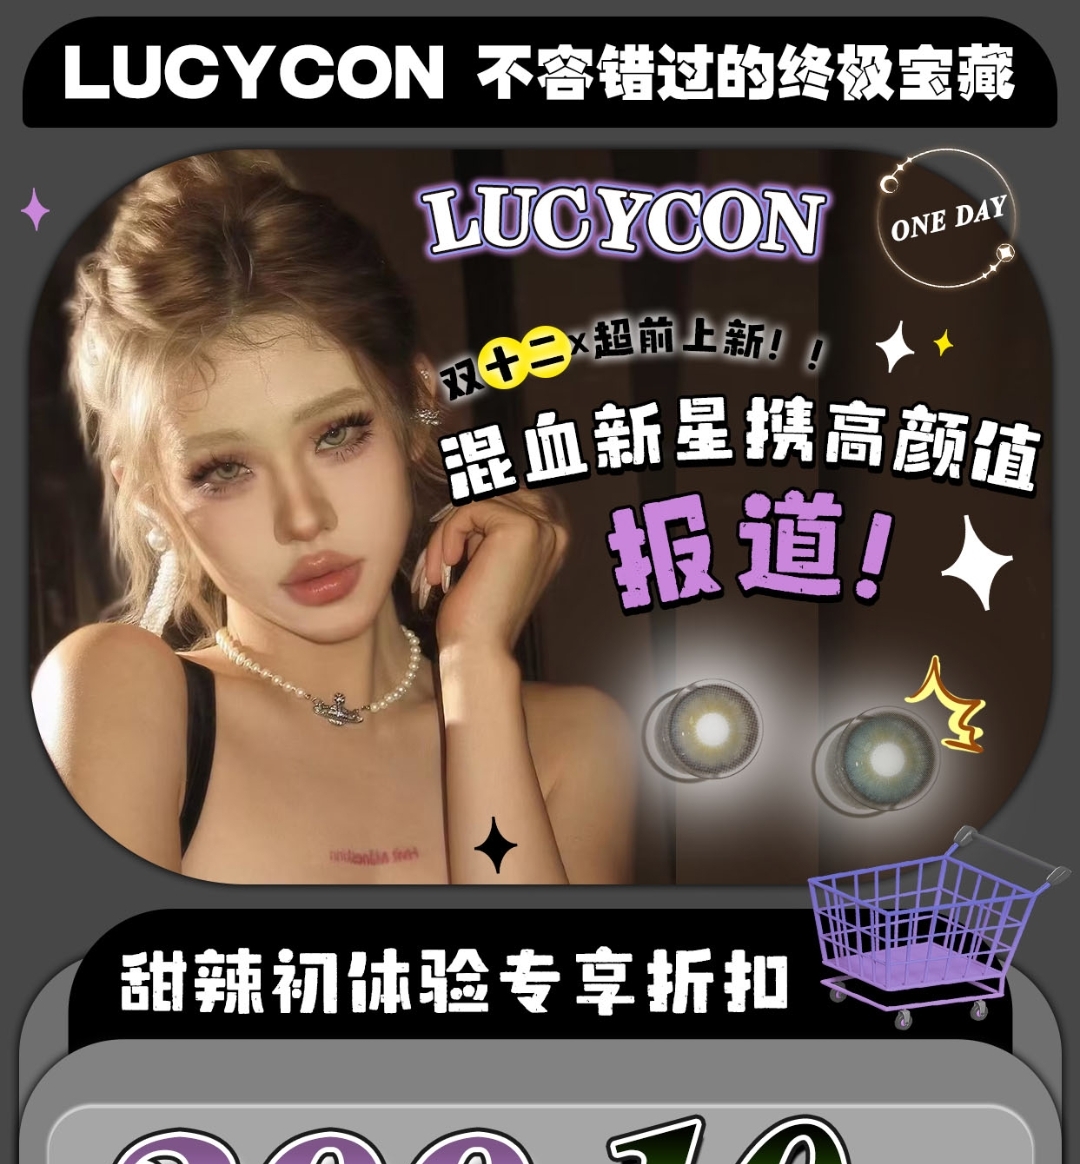 【日抛】LUCYCON 双十二混血新星报道 甜辣初体验专享折扣